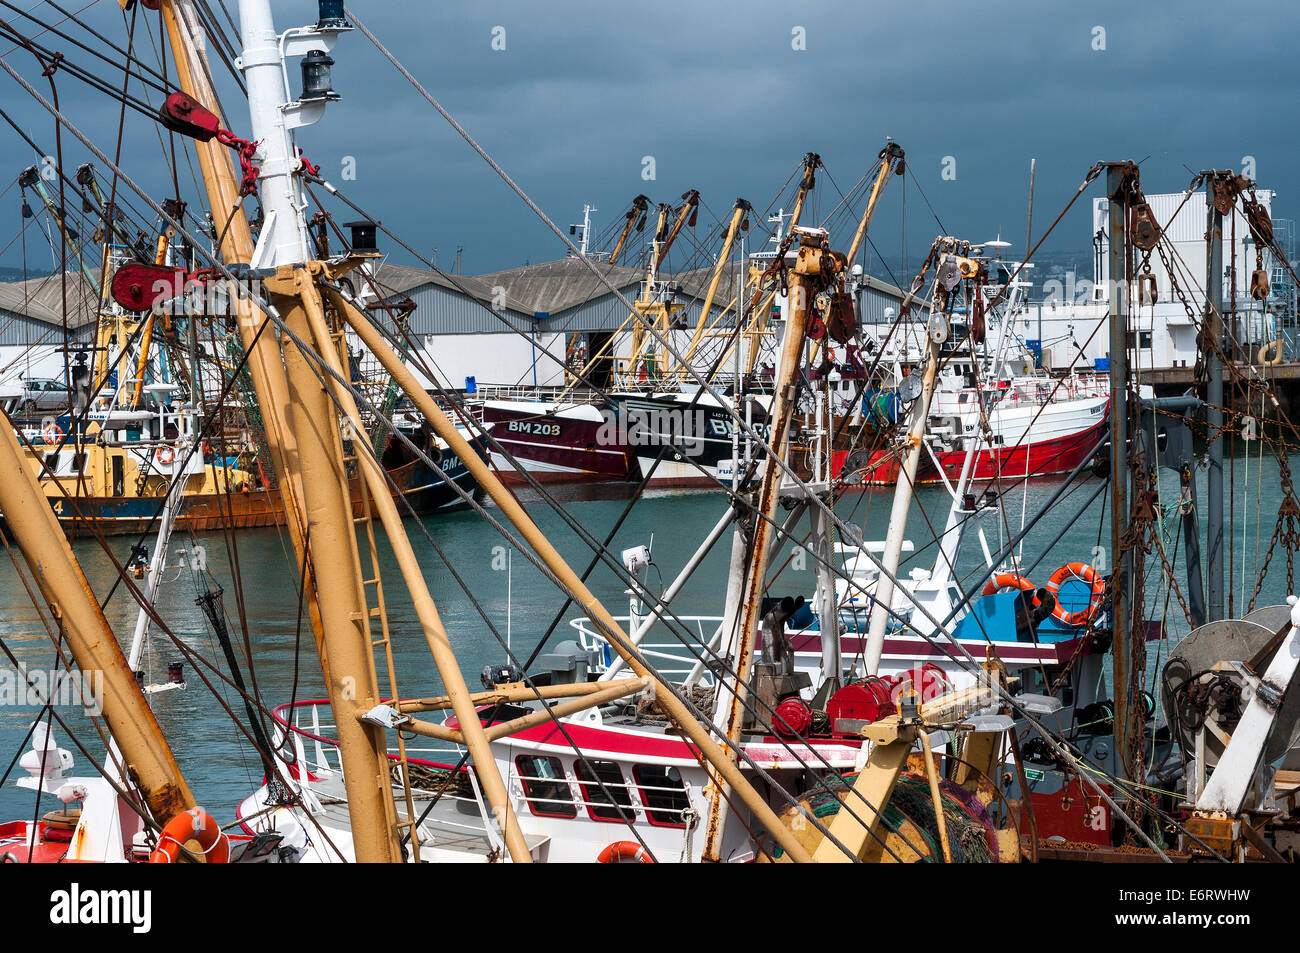 Brixham Fischereiflotte im Hafen, Strand, Strahl Trawler, Baumkurrentrawlern, South Devon, England, Englisch, Angeln, Schwimmen, Urlaub Stockfoto